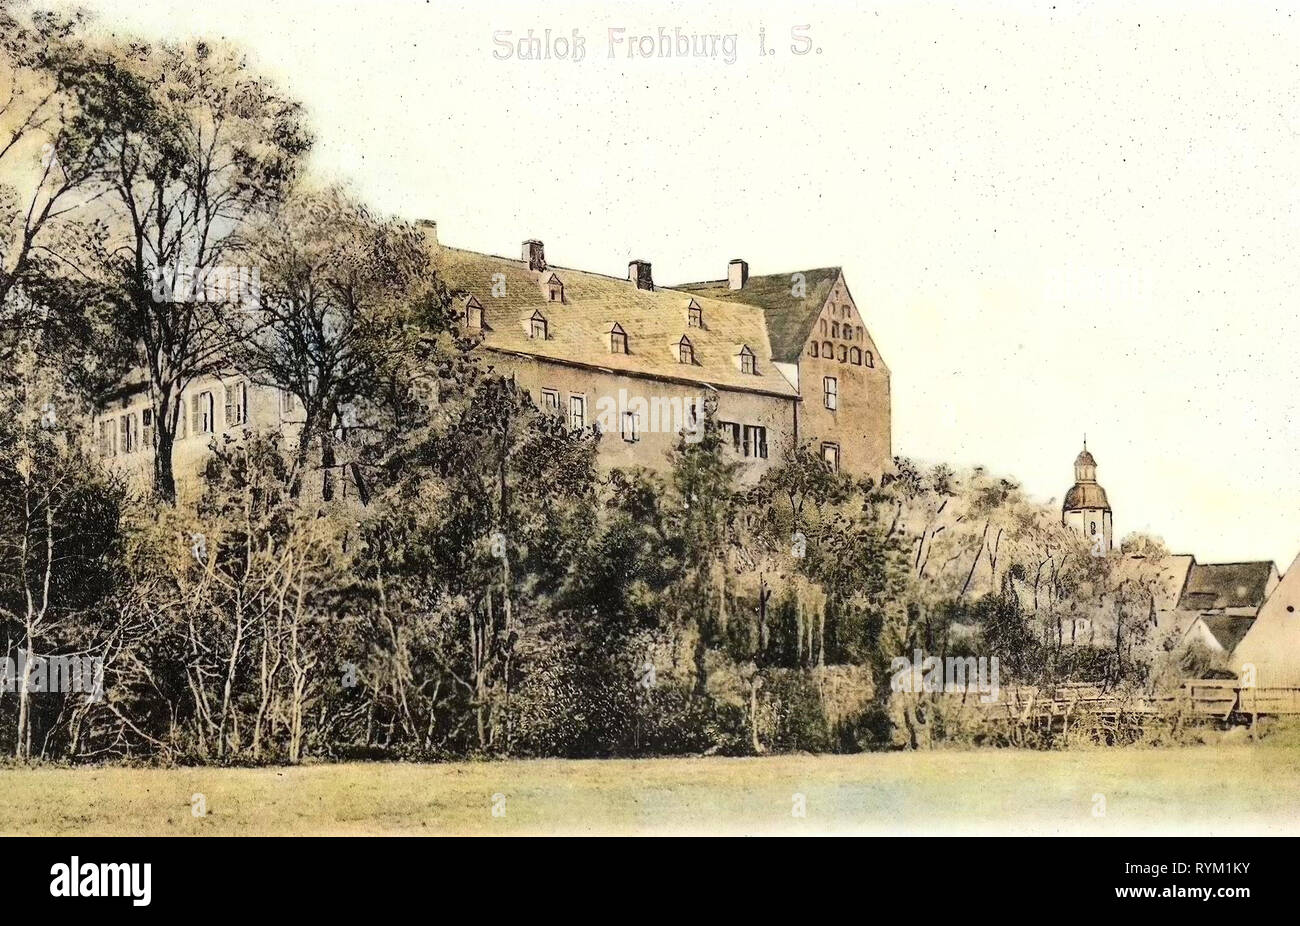 Schloss Frohburg historisch, Churches in Frohburg, 1906, Landkreis Leipzig, Frohburg, Schloß, Germany Stock Photo